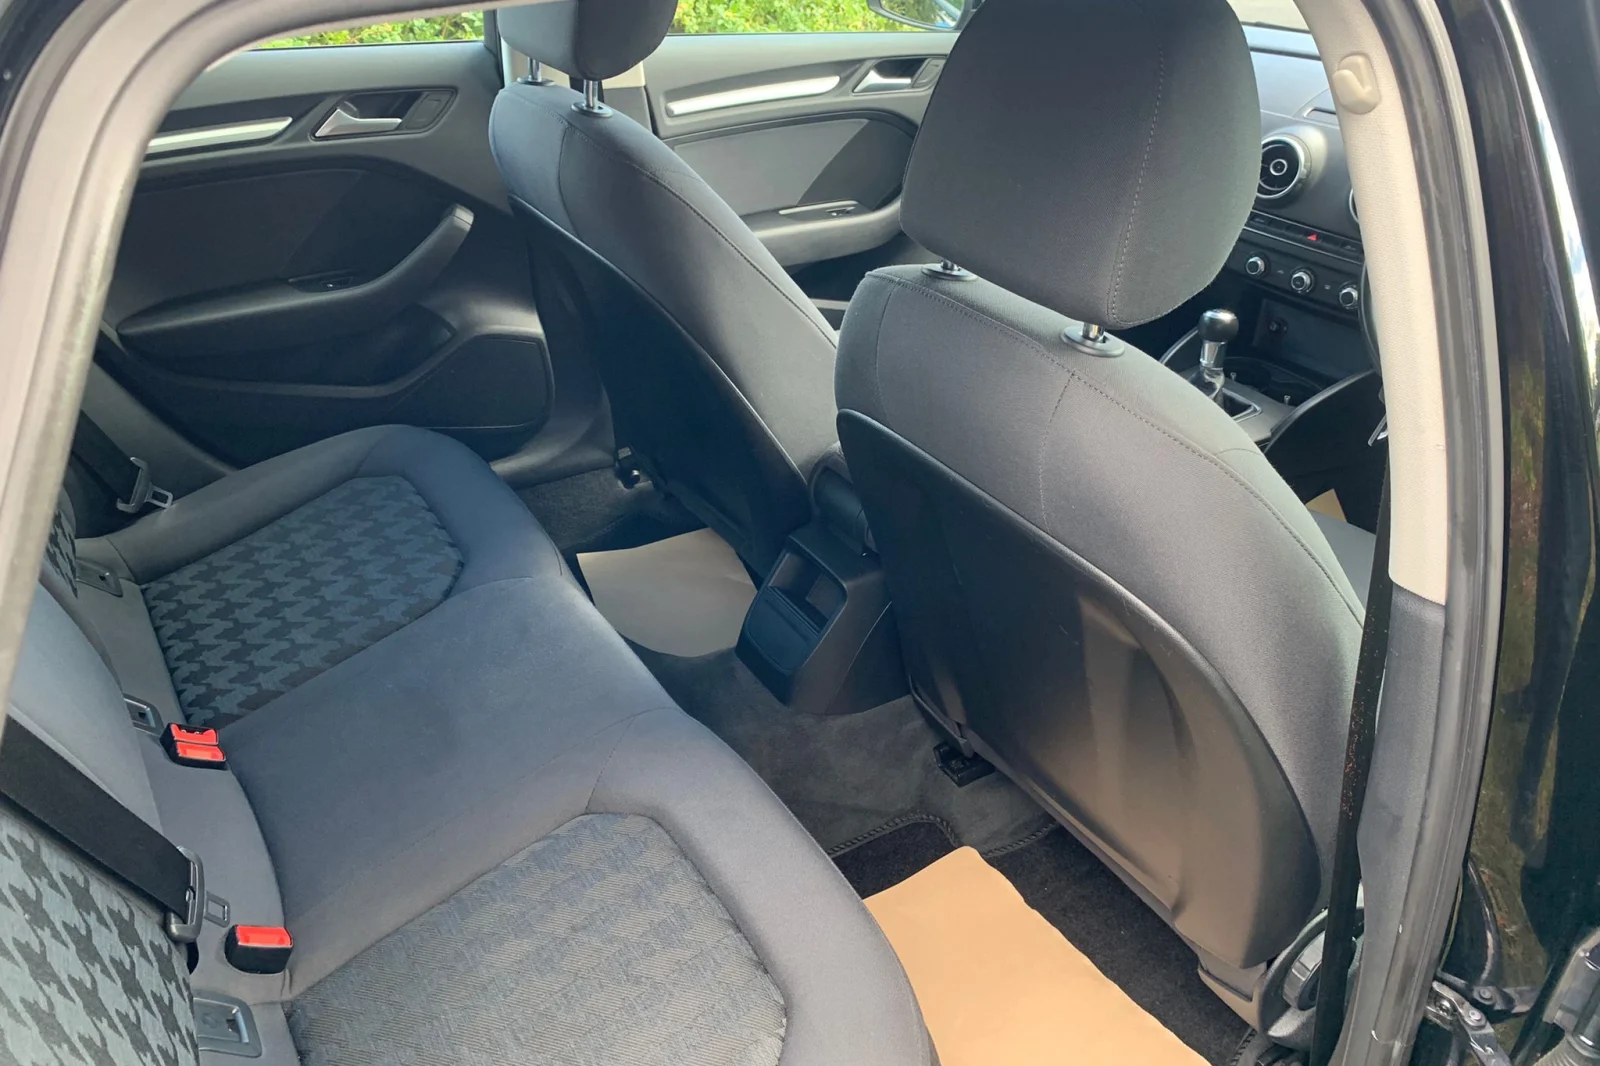 Audi-Backseat-scaled.webp